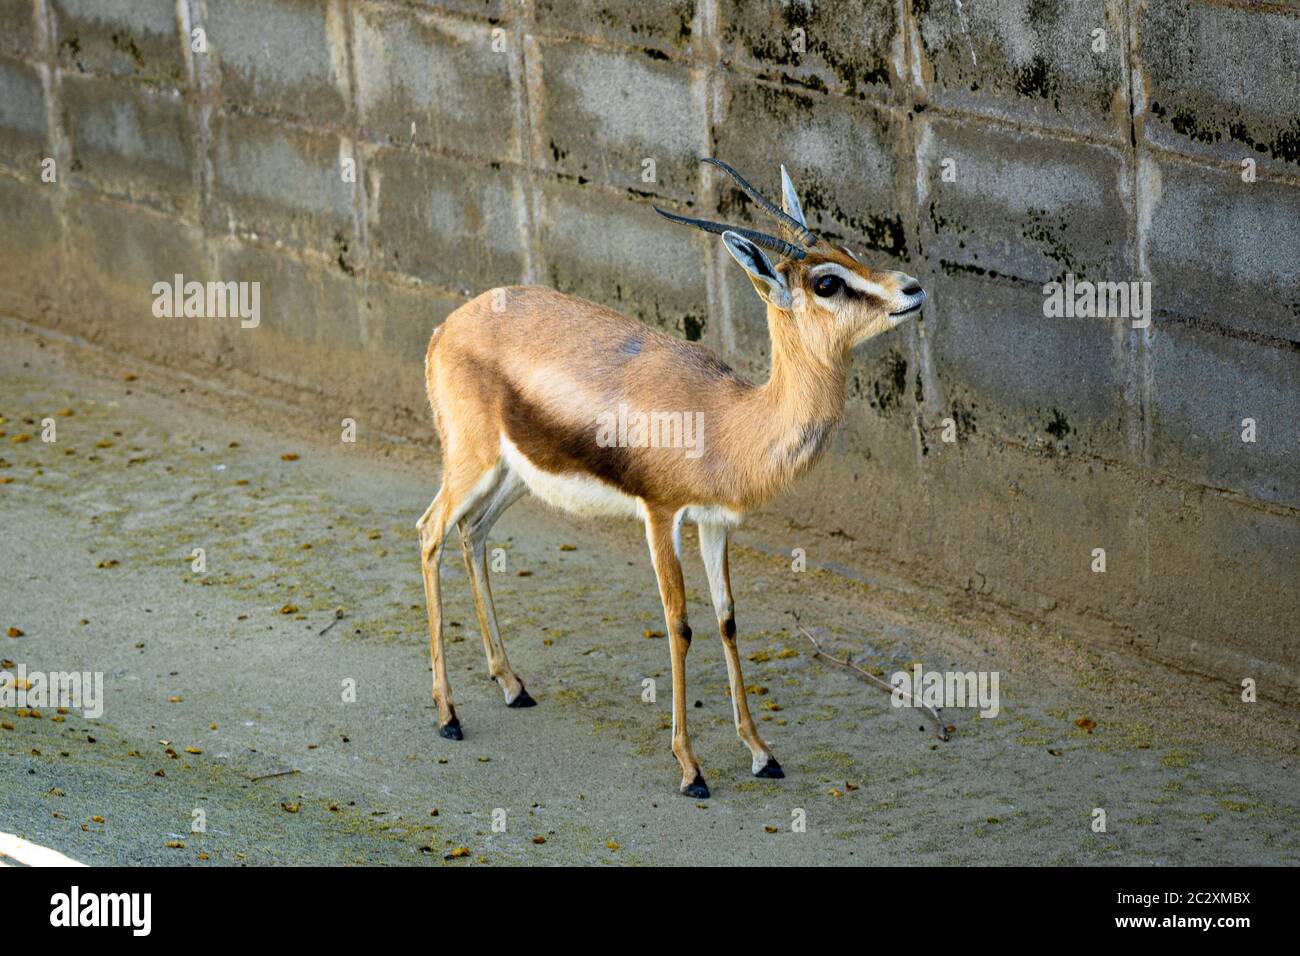 Saharian dorcas gazelle (Gazella dorcas osiris) in zoo Barcelona. Stock Photo